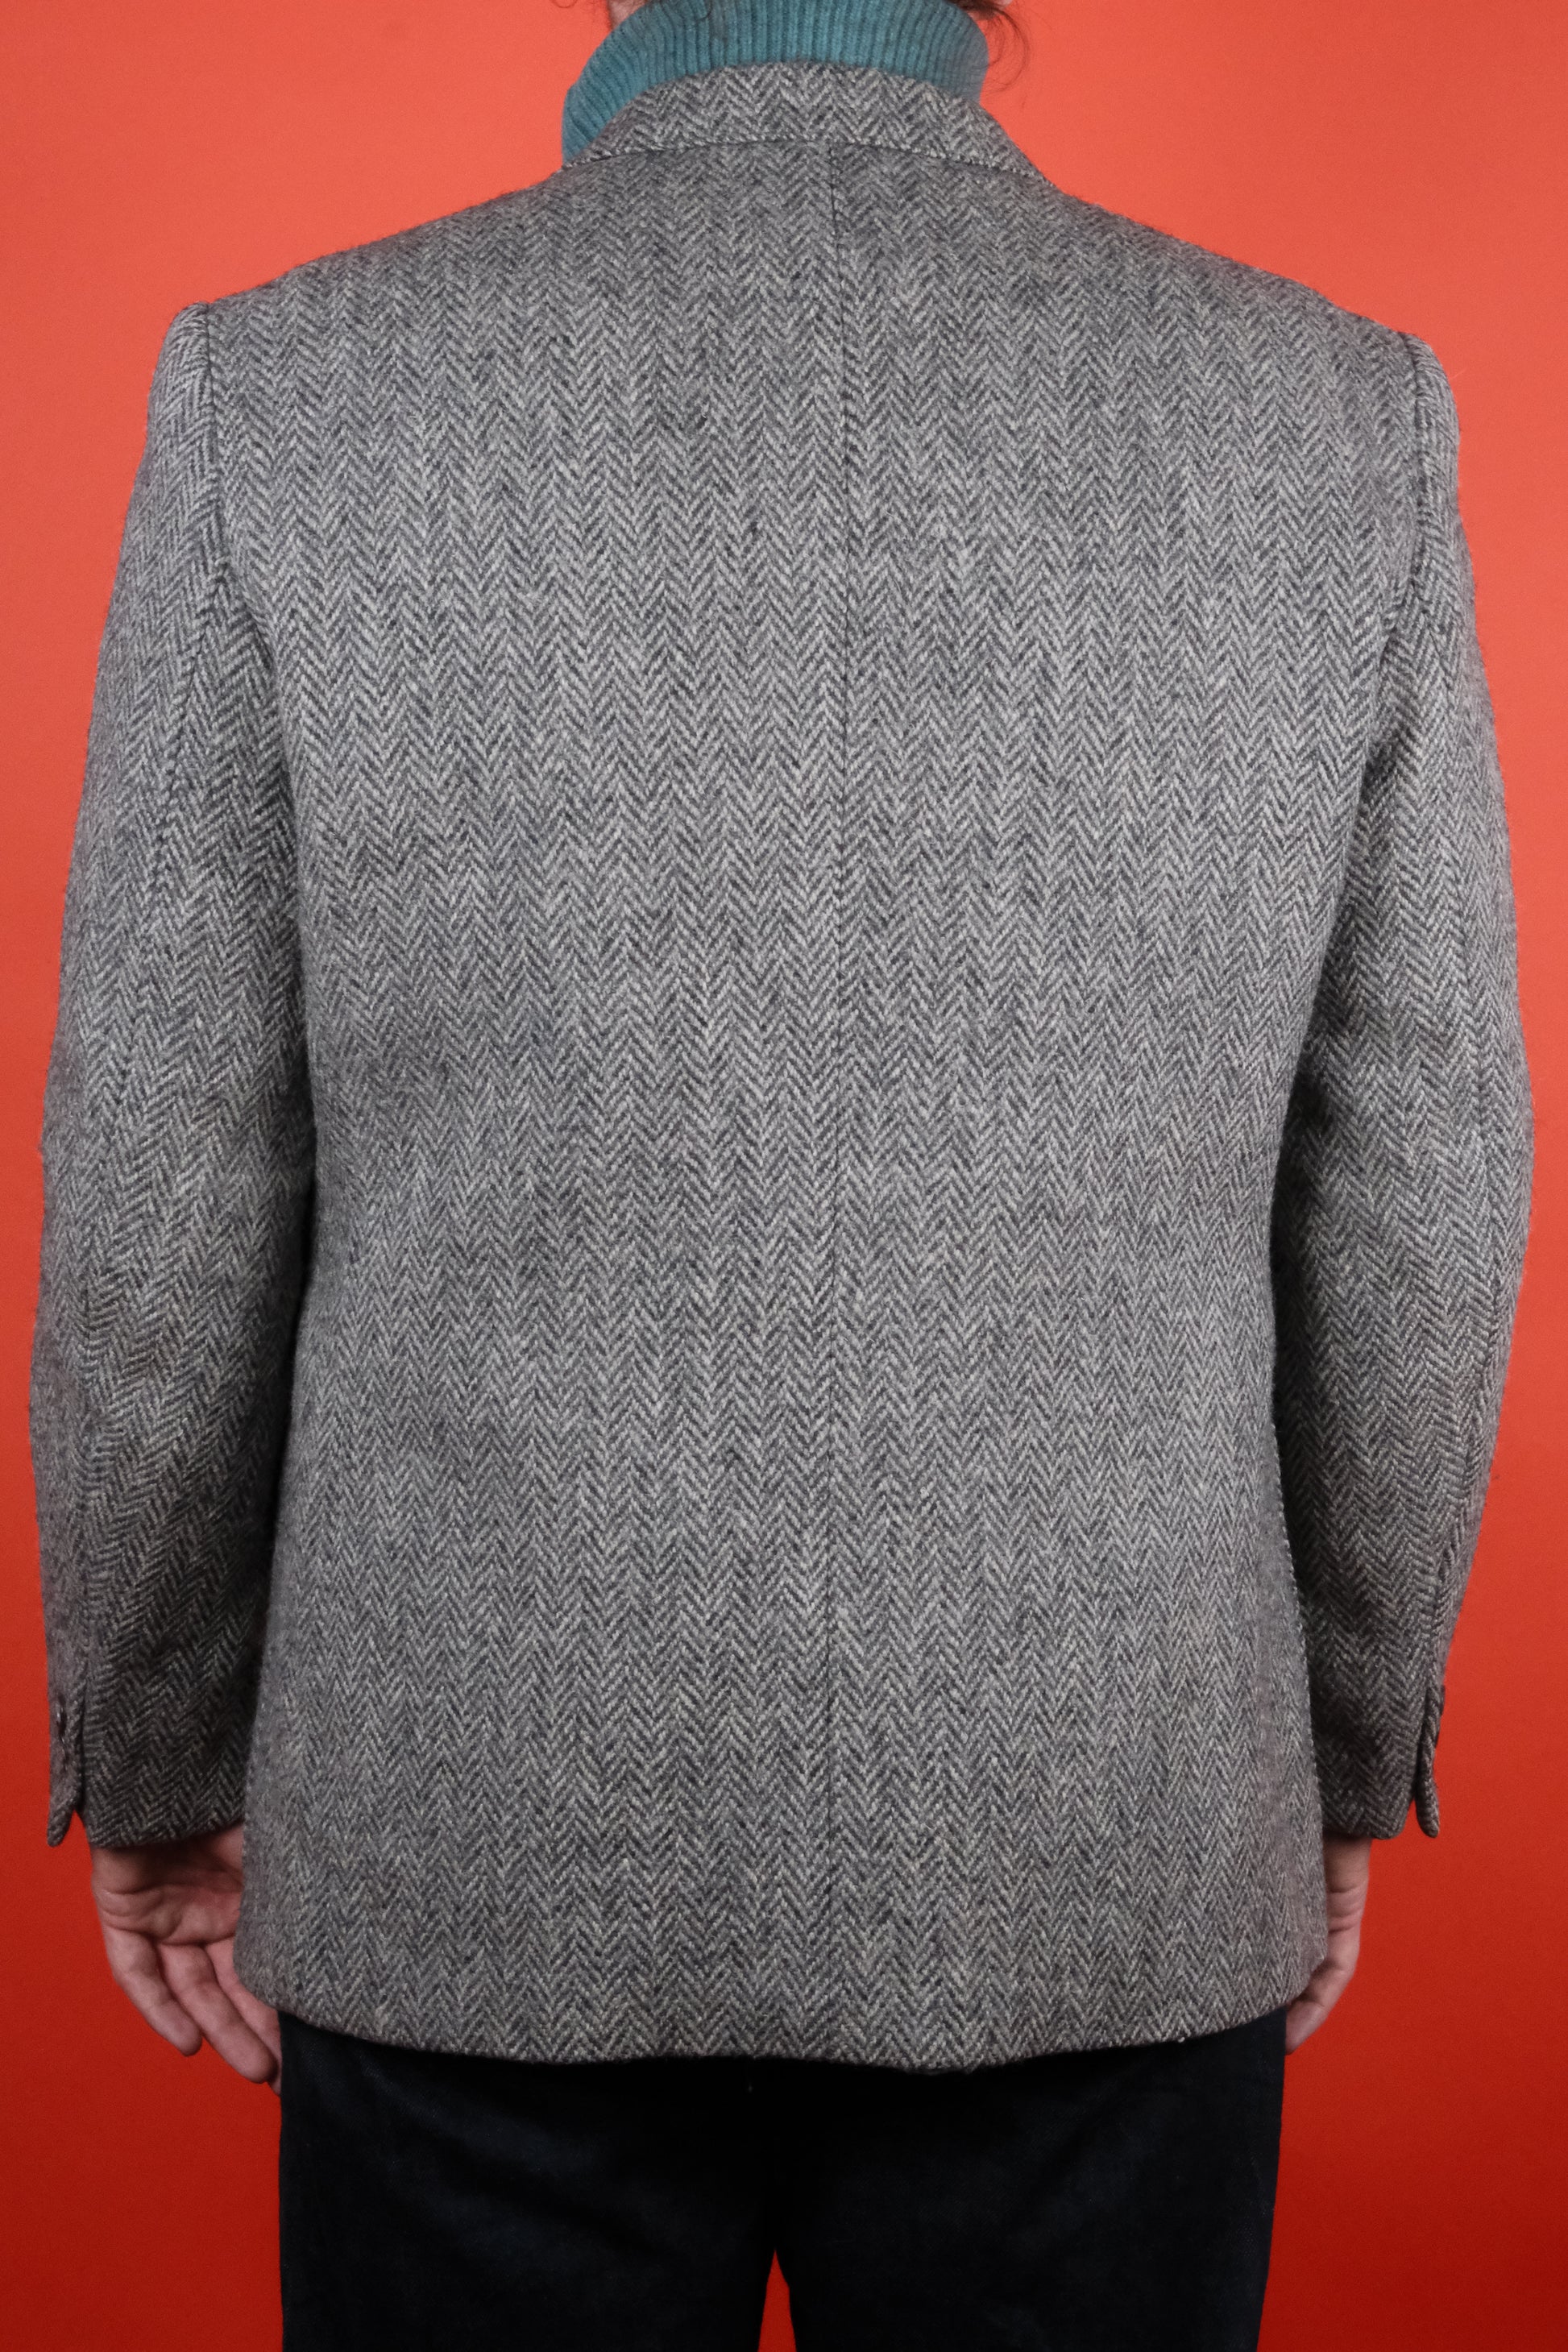 Grey Herringbone Harris Tweed Suit Jacket 'M' - vintage clothing clochard92.com